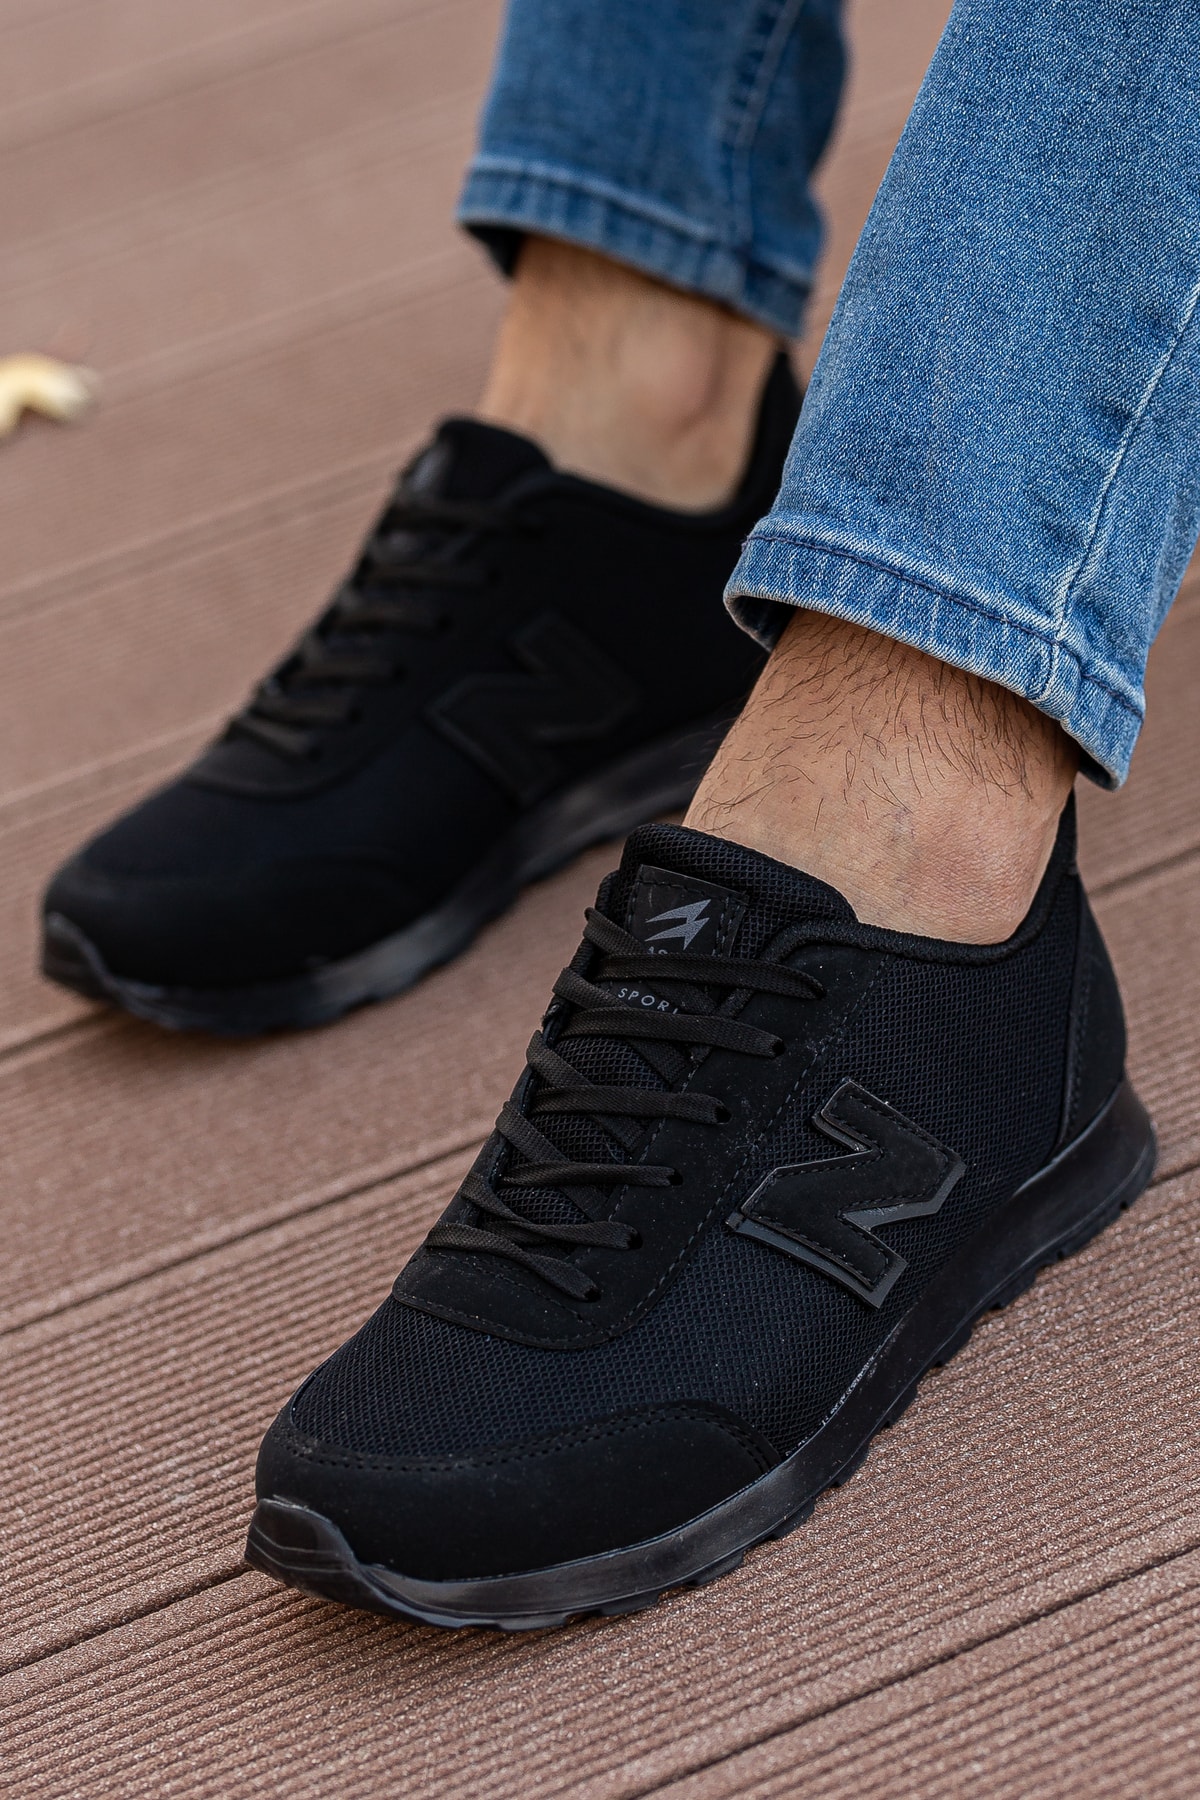 BOUIS Erkek Siyah Günlük Bağcıklı Düz Rahat Sneaker Yumuşak Taban Casual Yürüyüş Ayakkabı Termo Taban